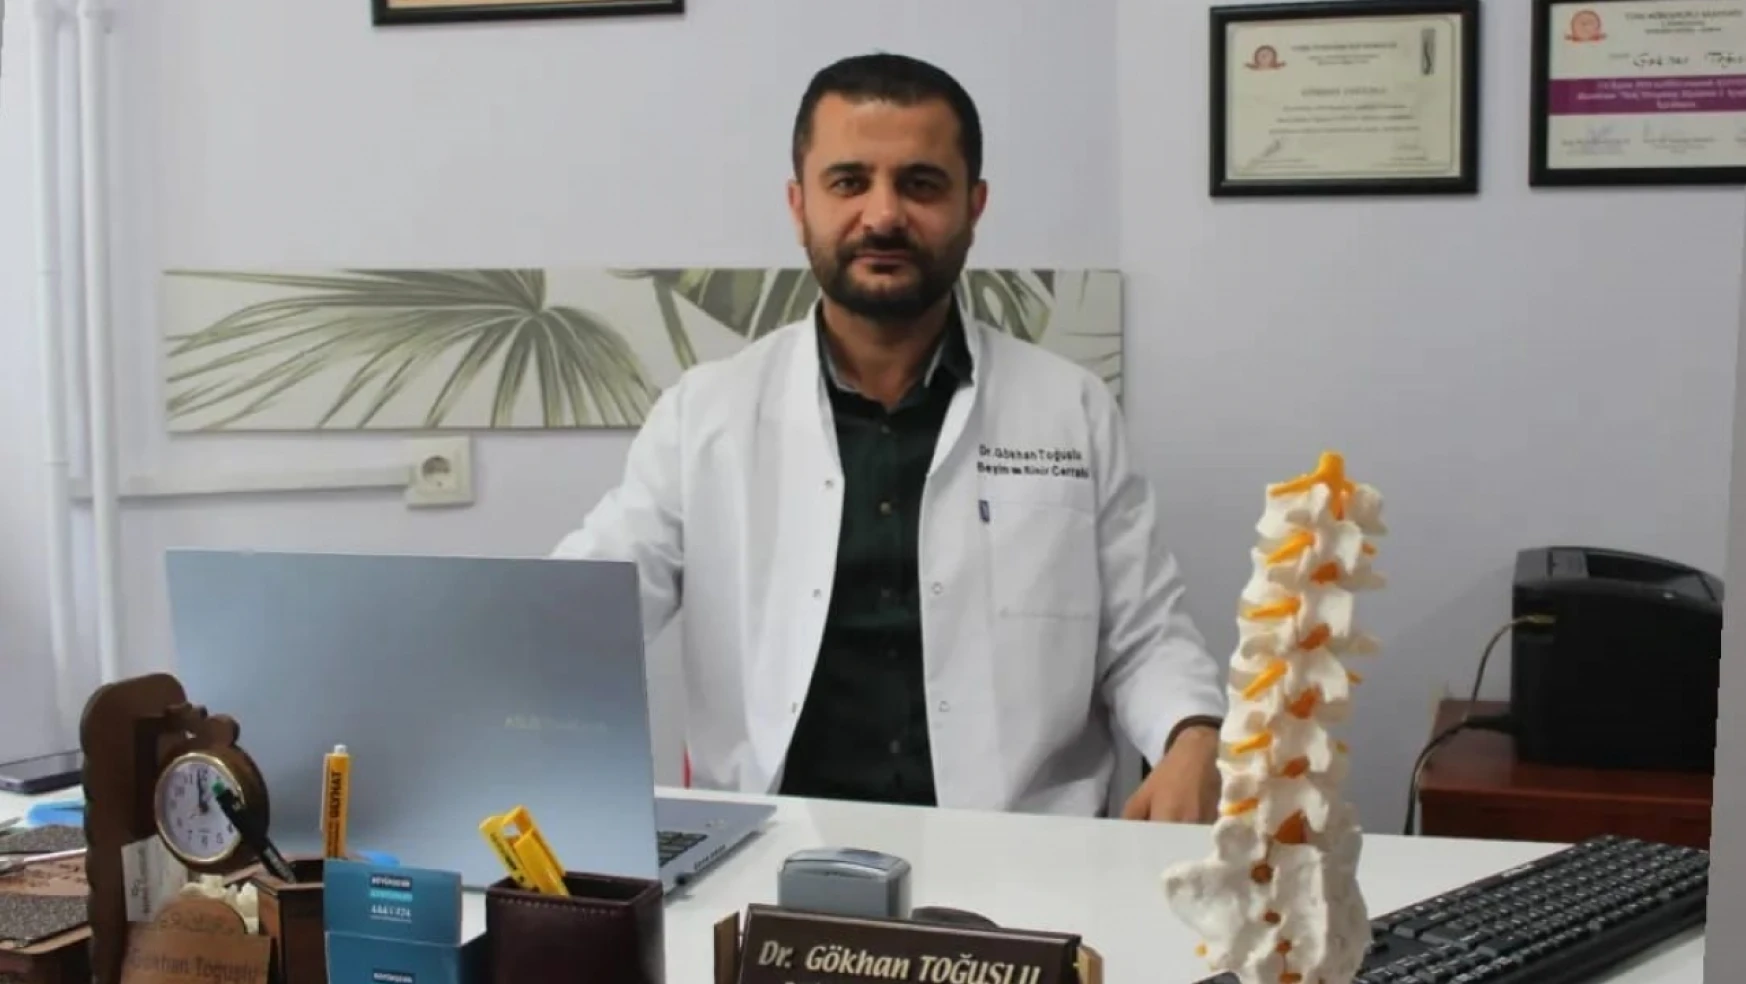 Konya'da bel fıtığı tedavisinde bir ilk gerçekleştiriliyor! Op. Dr. Gökhan Toğuşlu açıkladı